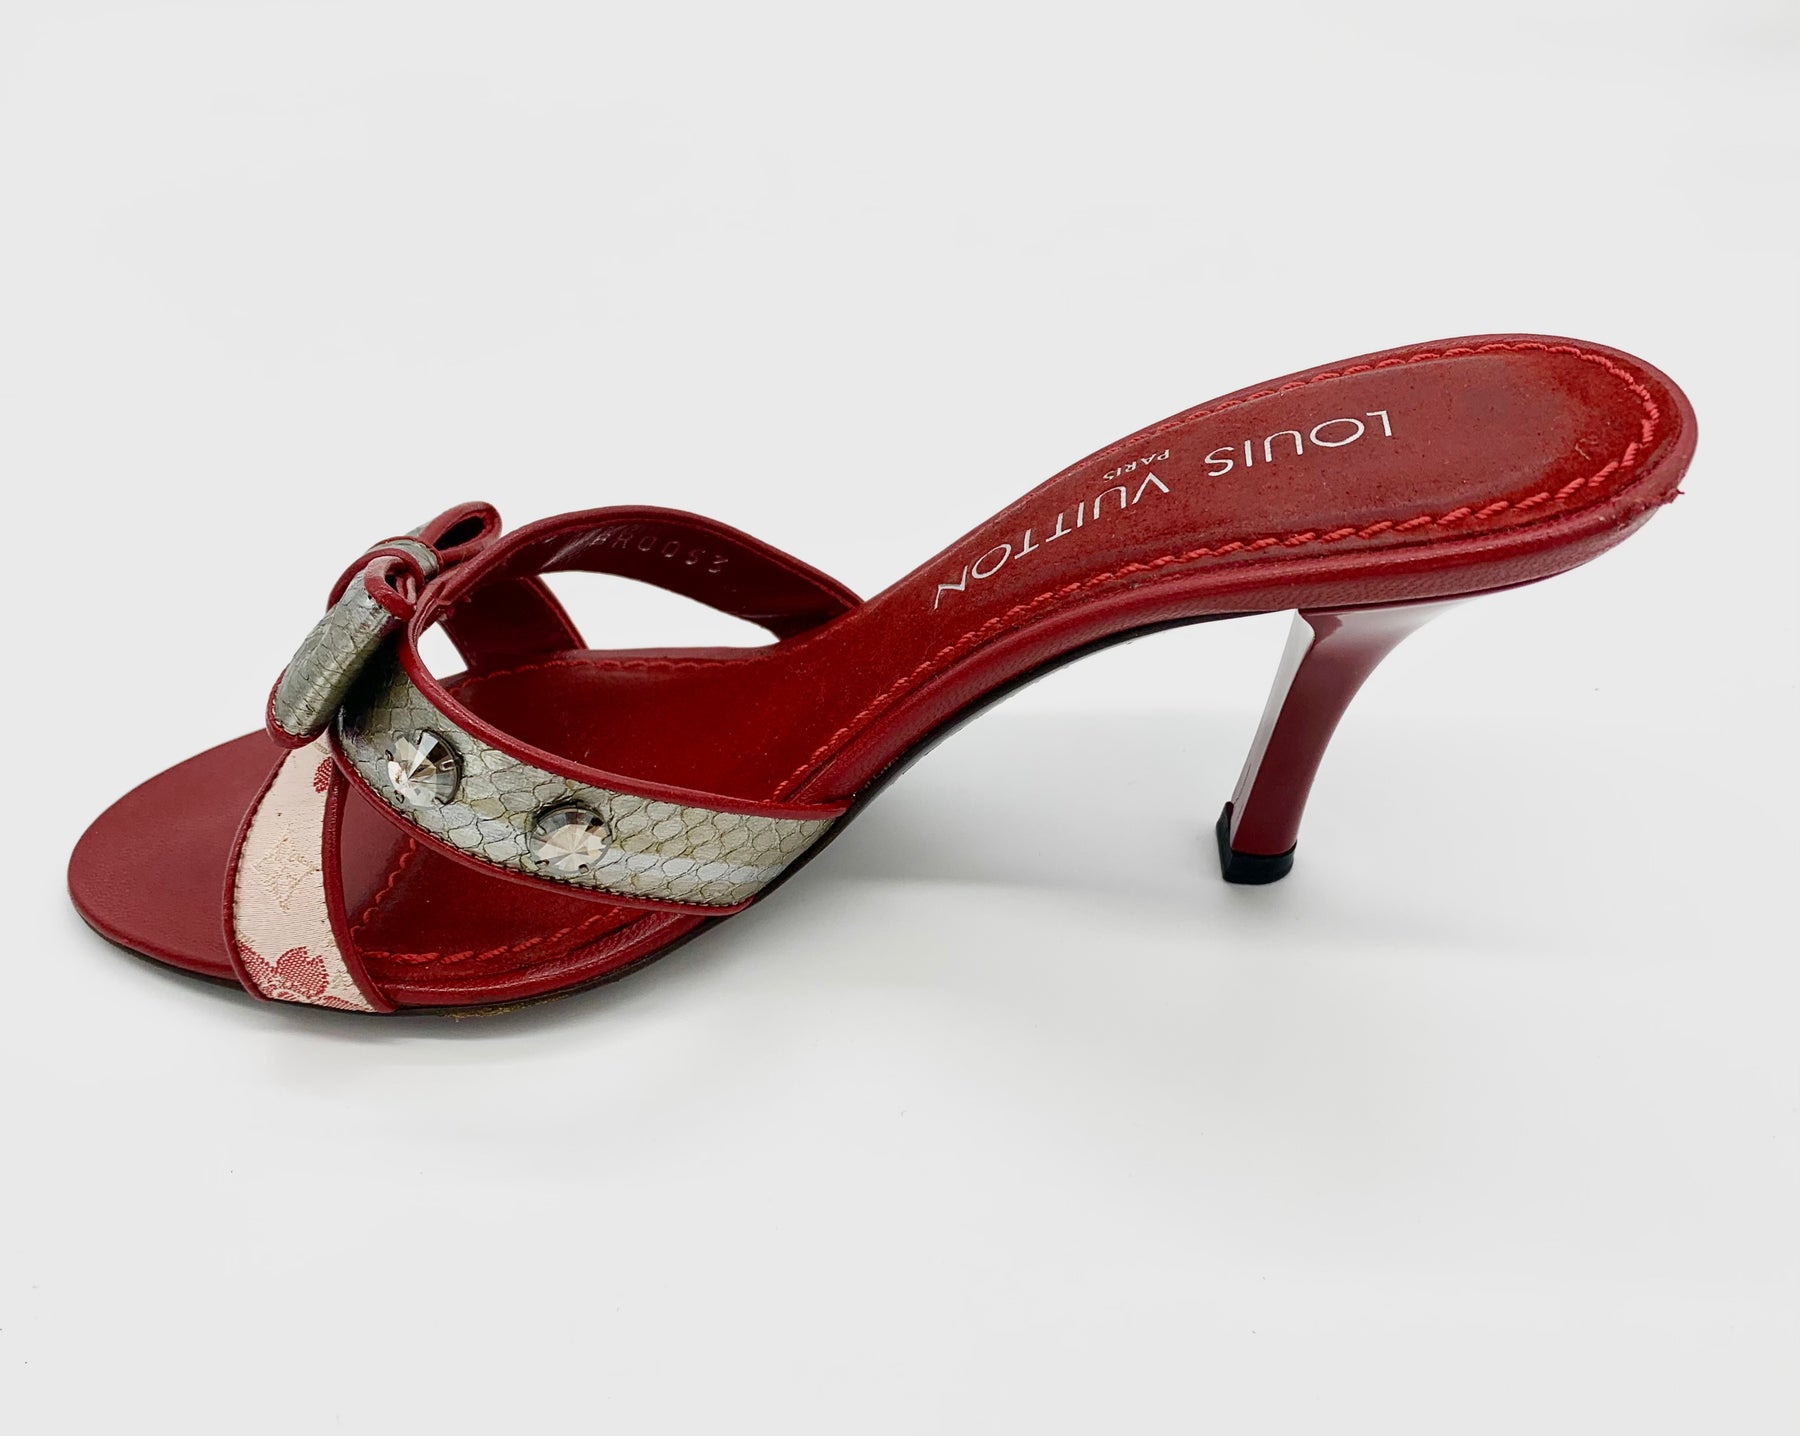 Louis Vuitton Pre-Owned X Takashi Murakami Cherry Monogram Mules